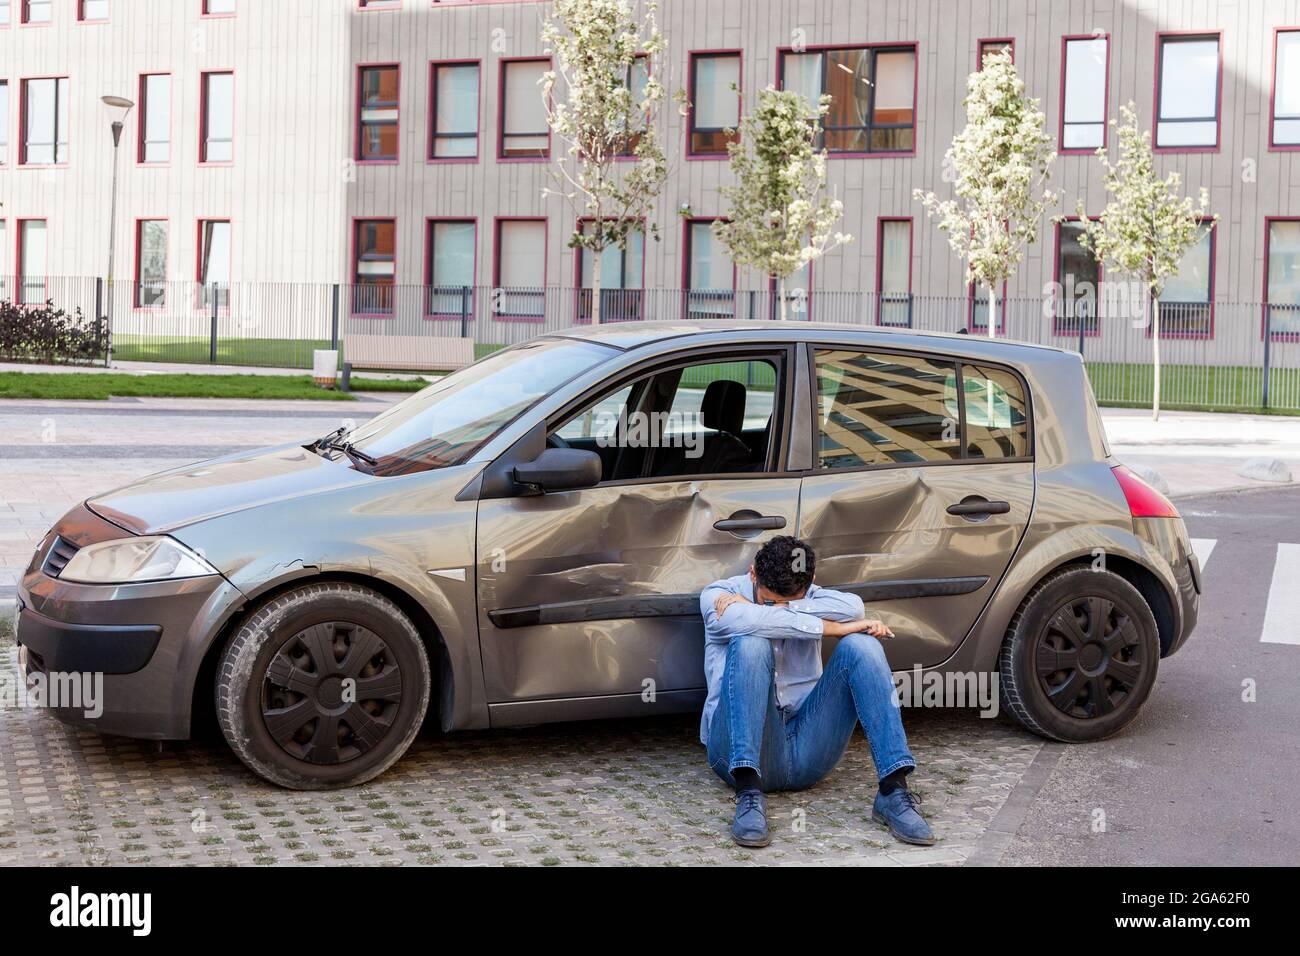 Mann in Verzweiflung trägt Freizeitkleidung auf dem Boden sitzen mit gekipptem Kopf in der Nähe von gebrochenem Auto, beschädigt Auto mit Kratzern und Beulen an Türen, sein Stockfoto